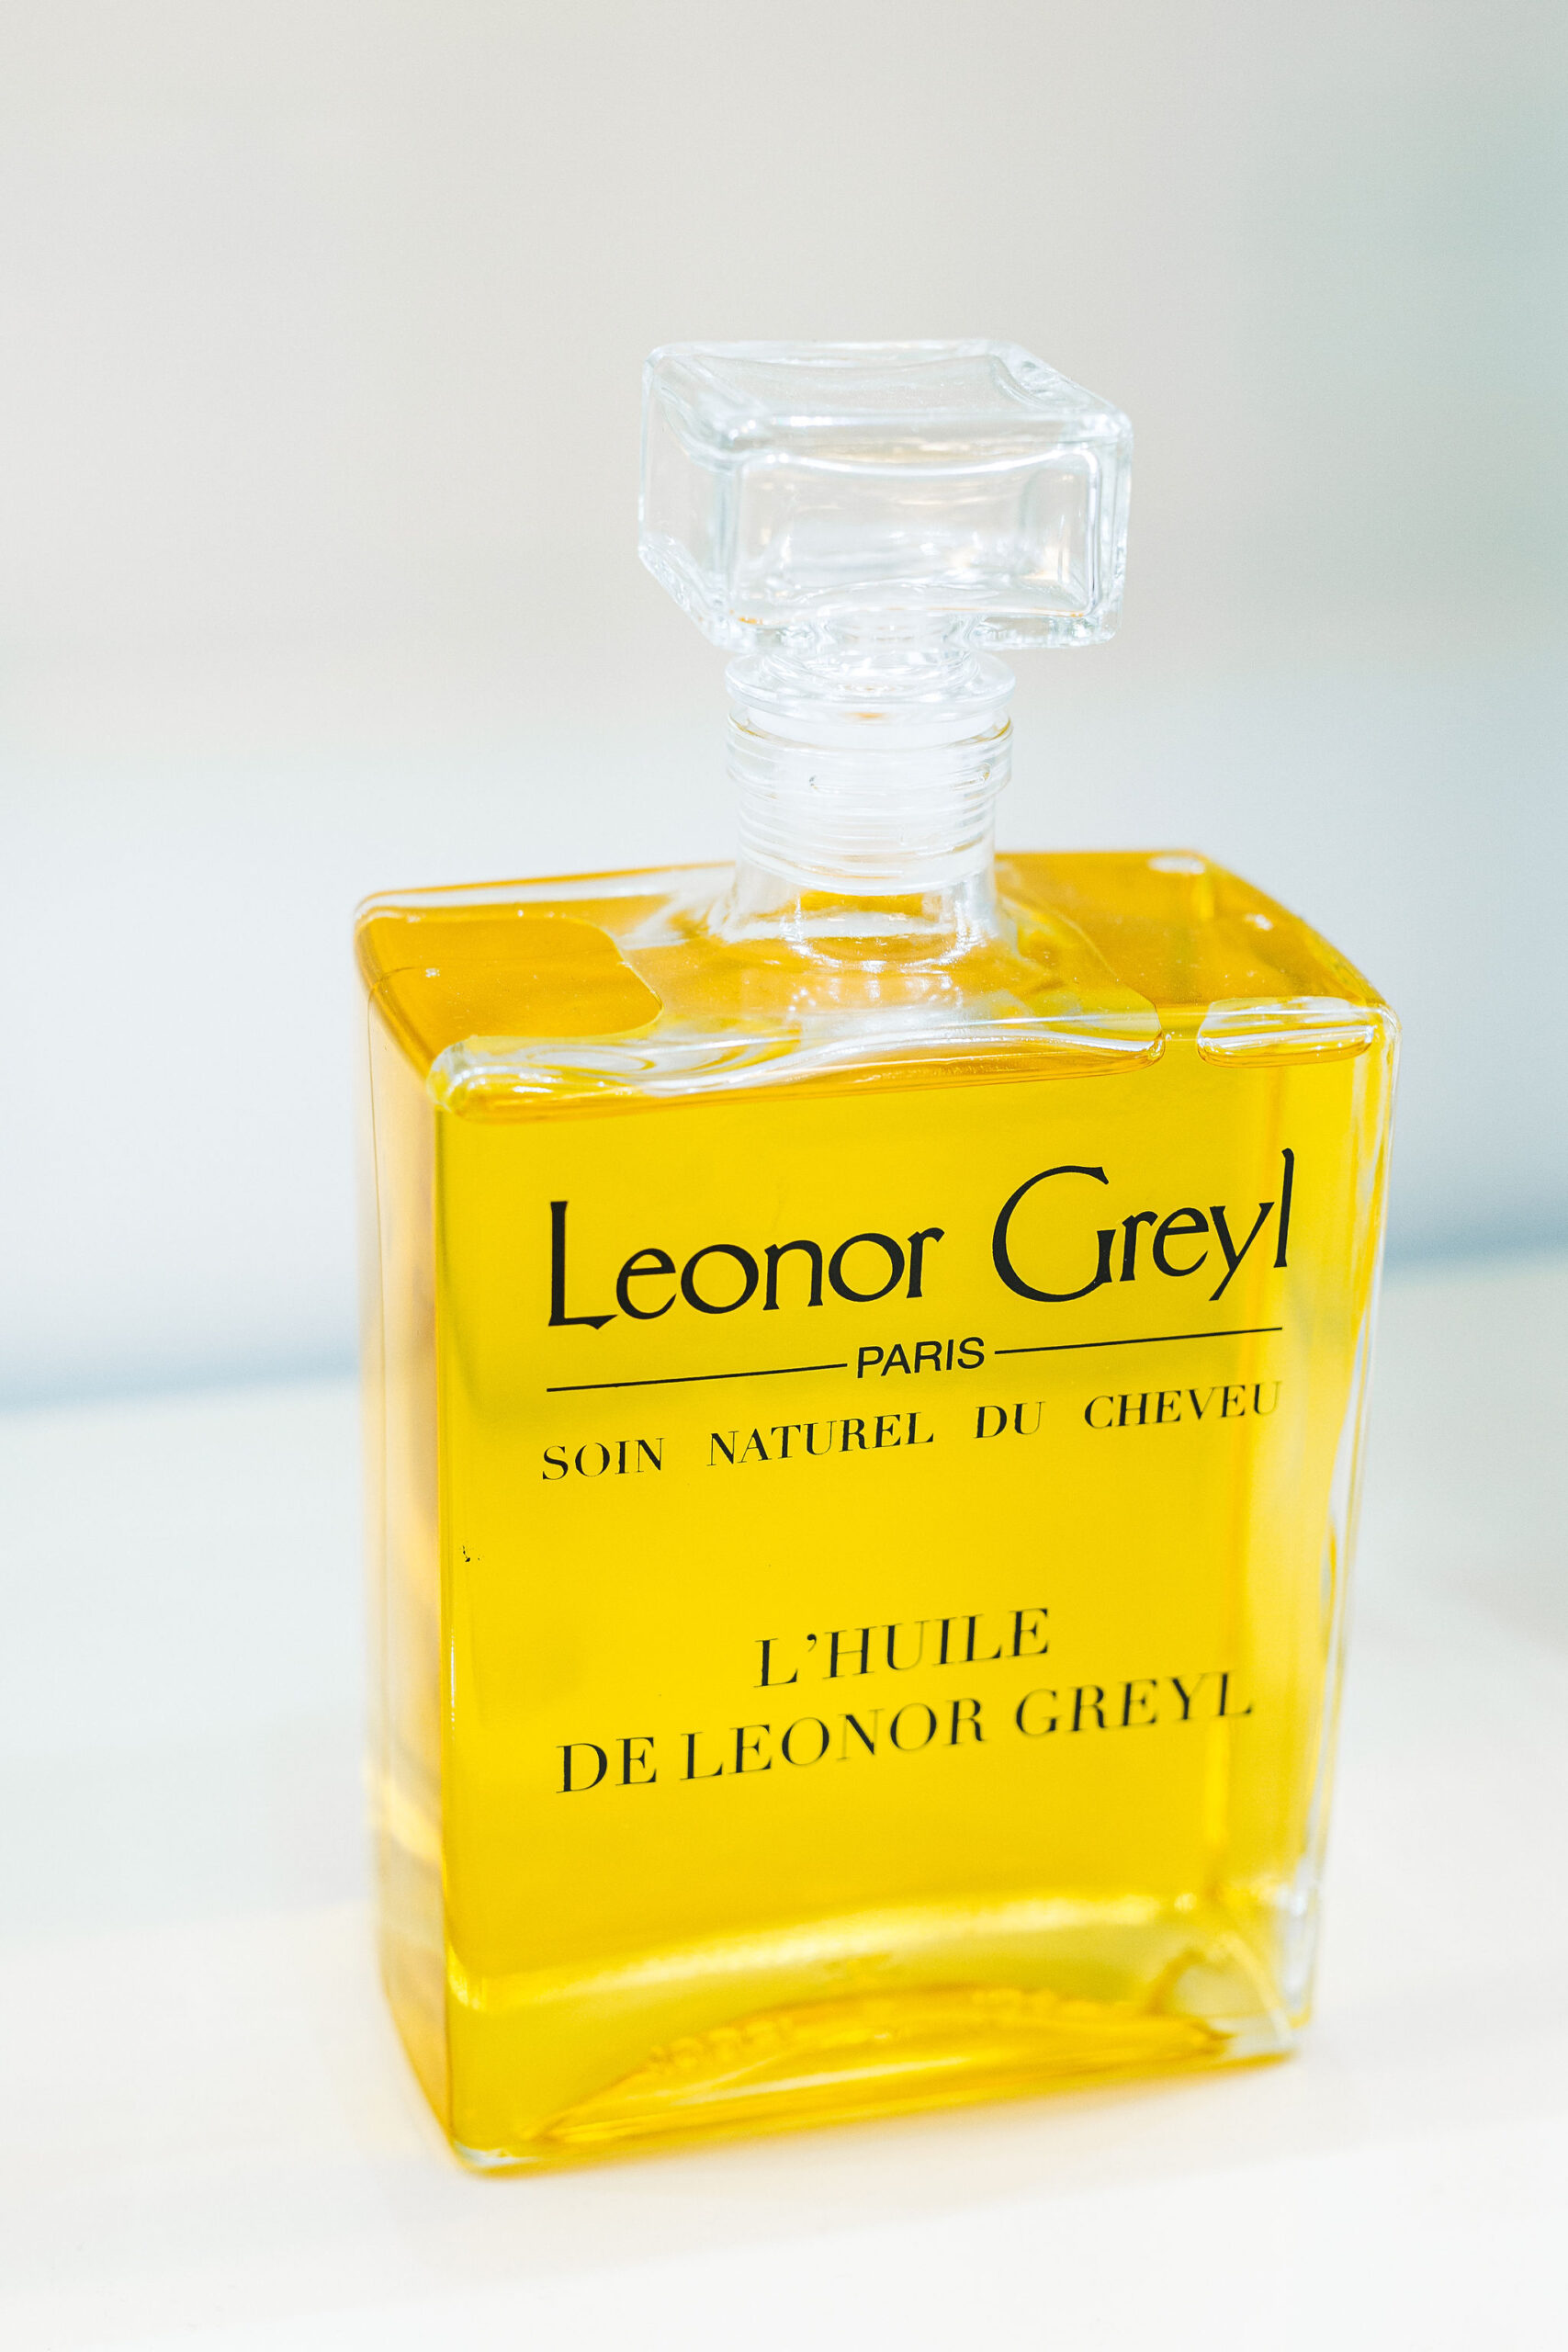 Leonor Greyl Produkte Pre-Shampoo L’Huile de Leonor Greyl